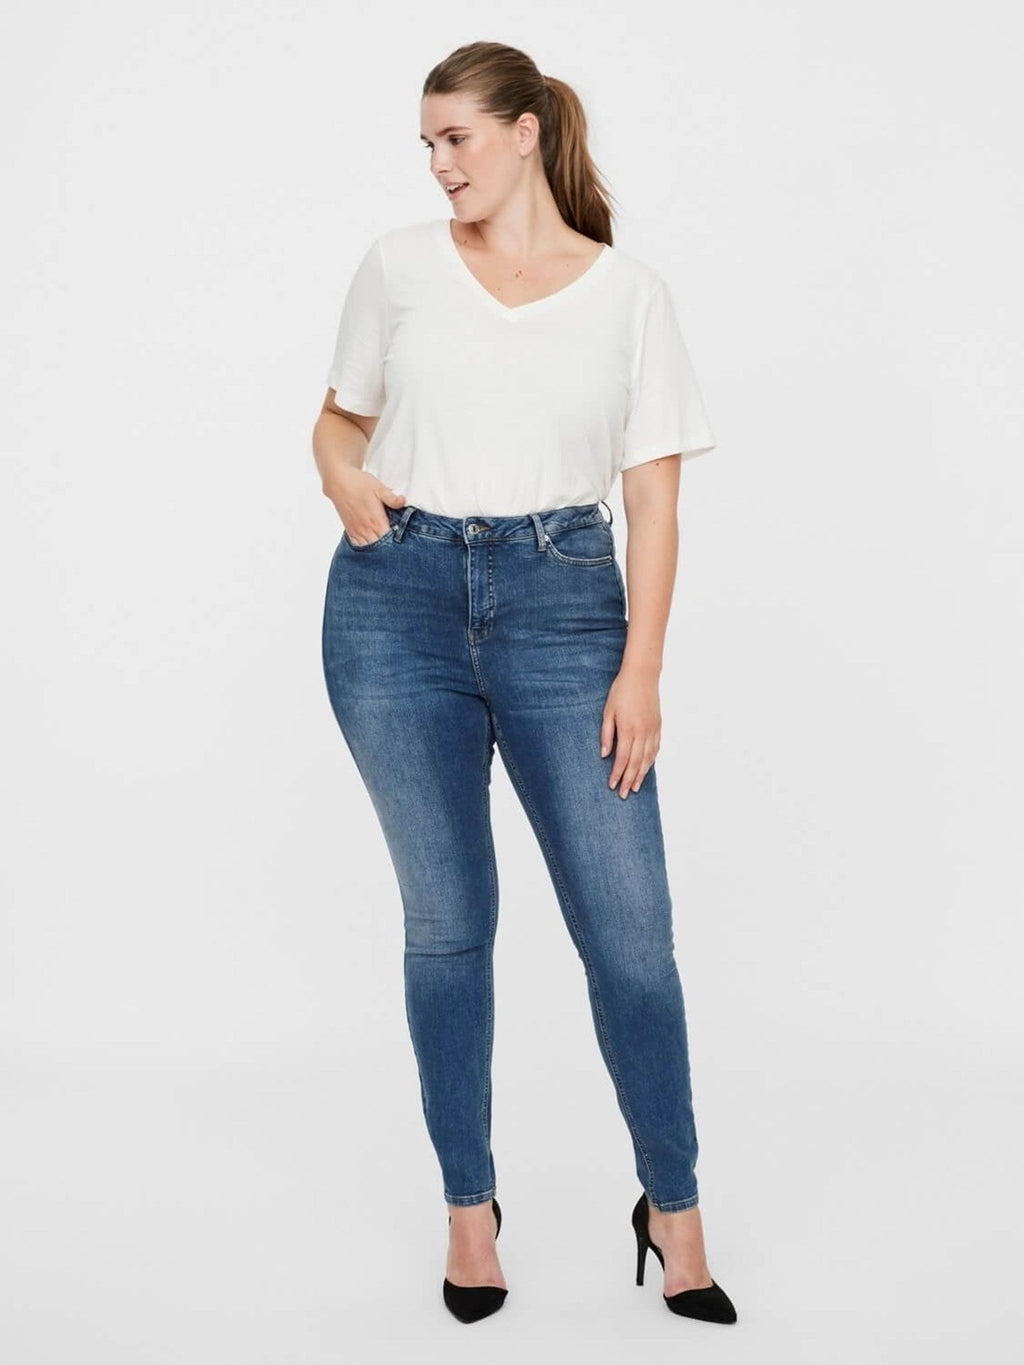 Lora Jeans de cintura alta (curva) - mezclilla azul medio